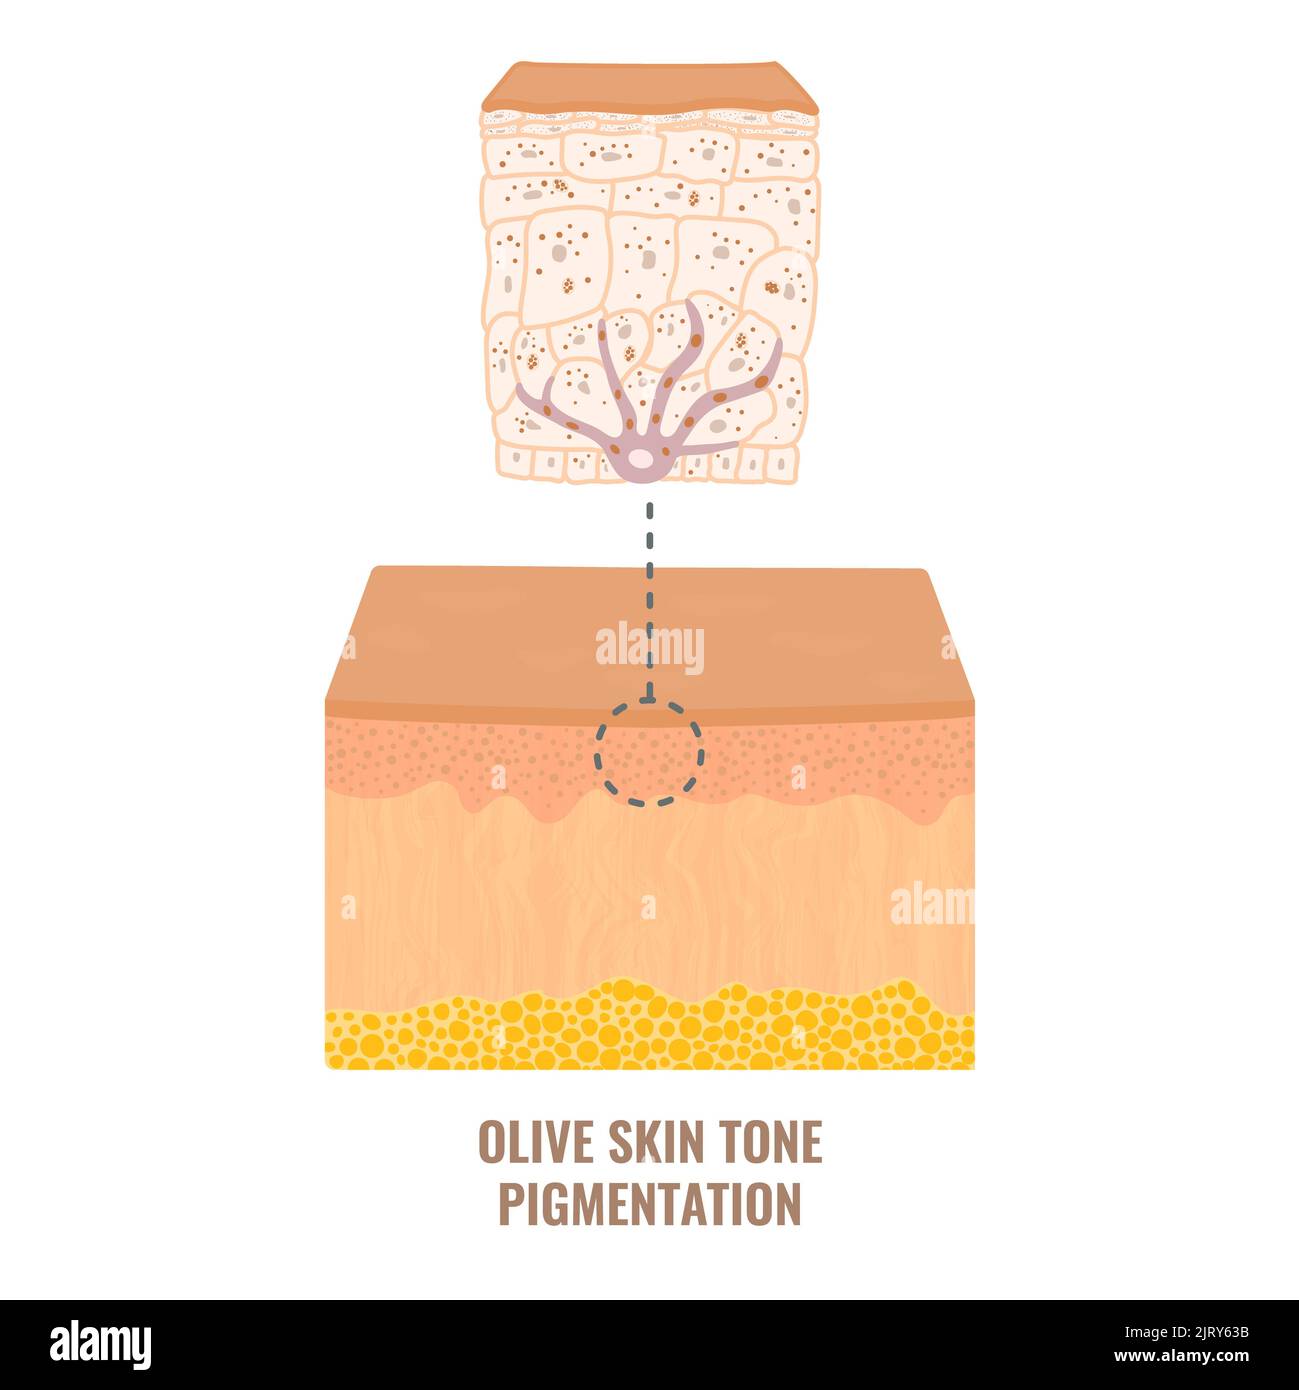 Pigmentation de la peau, illustration Banque D'Images